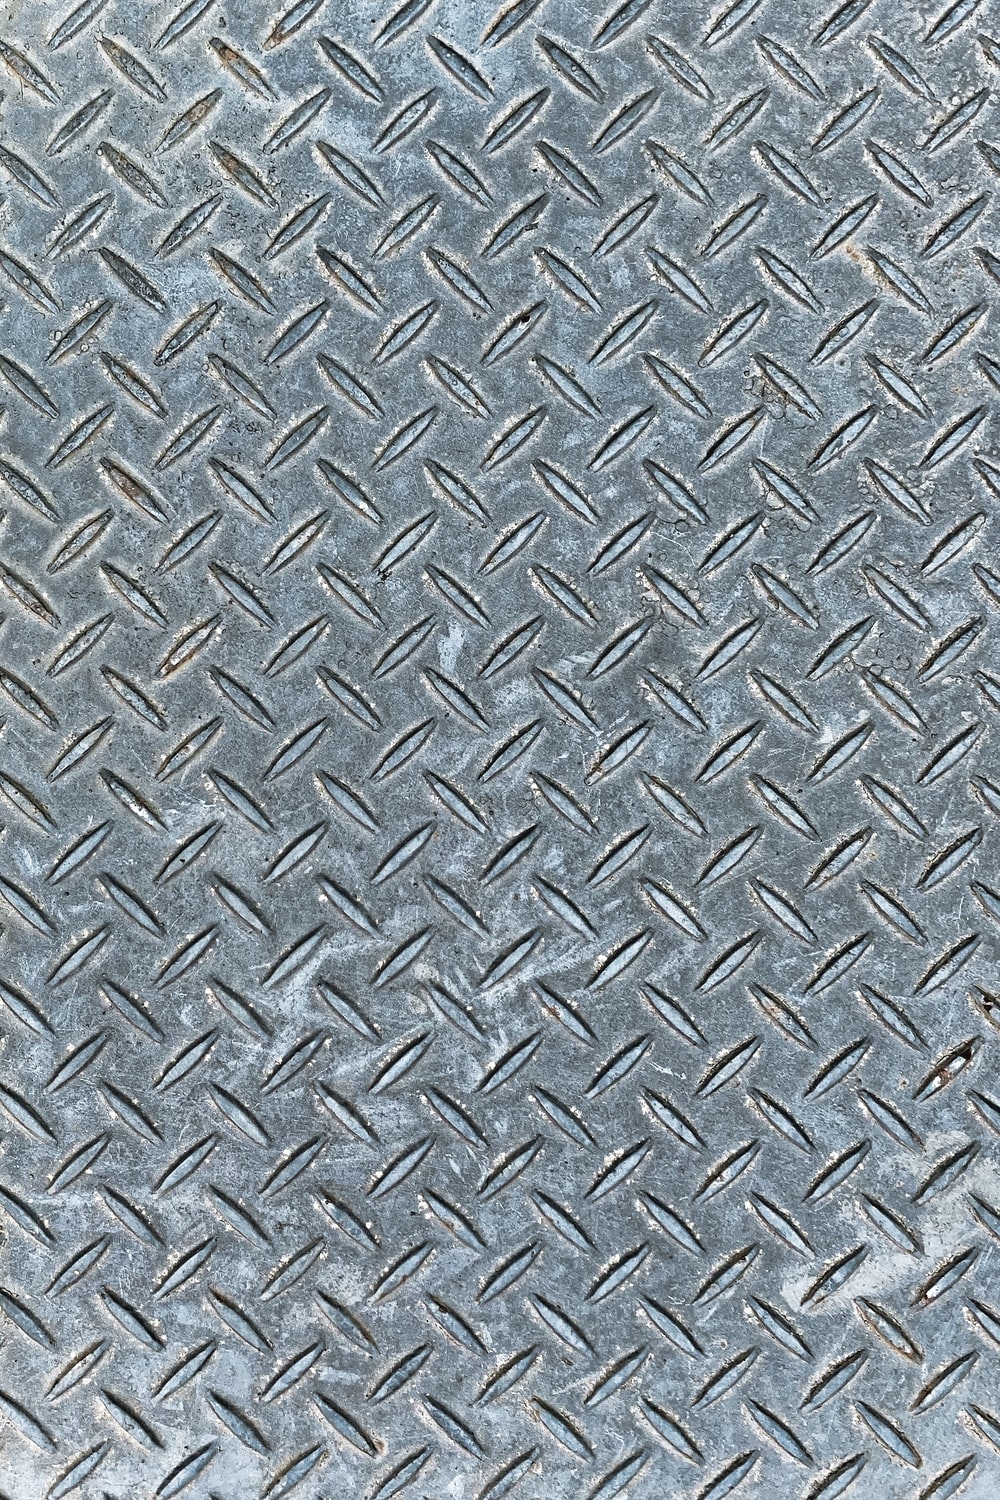 Steel Wallpapers